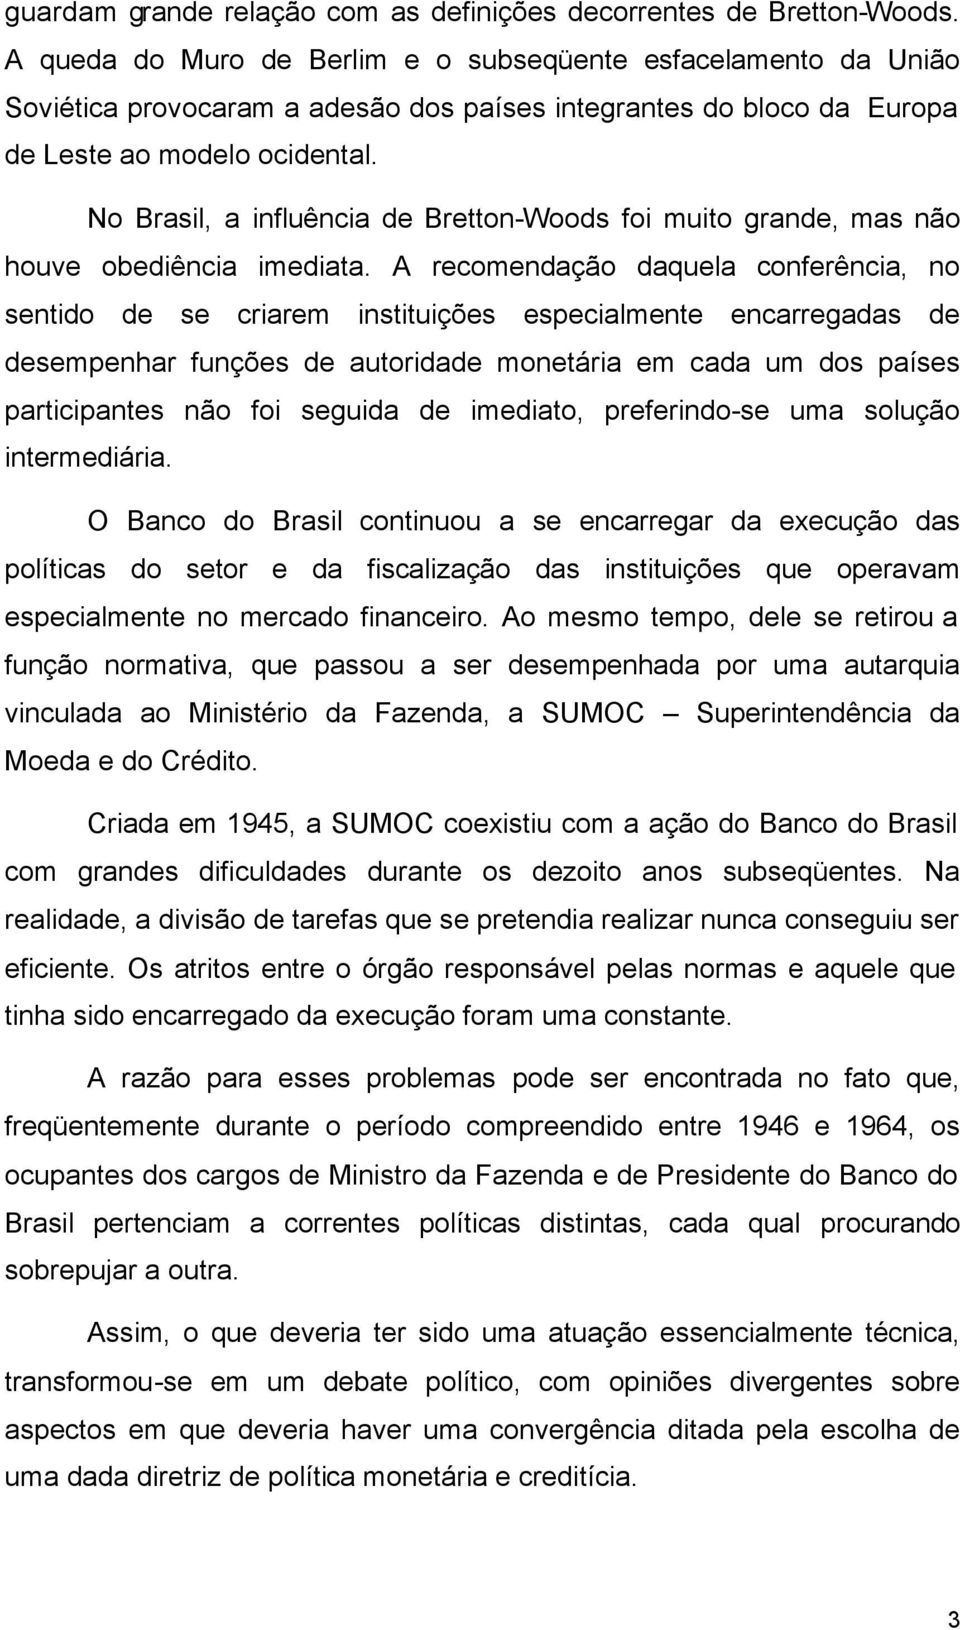 No Brasil, a influência de Bretton-Woods foi muito grande, mas não houve obediência imediata.